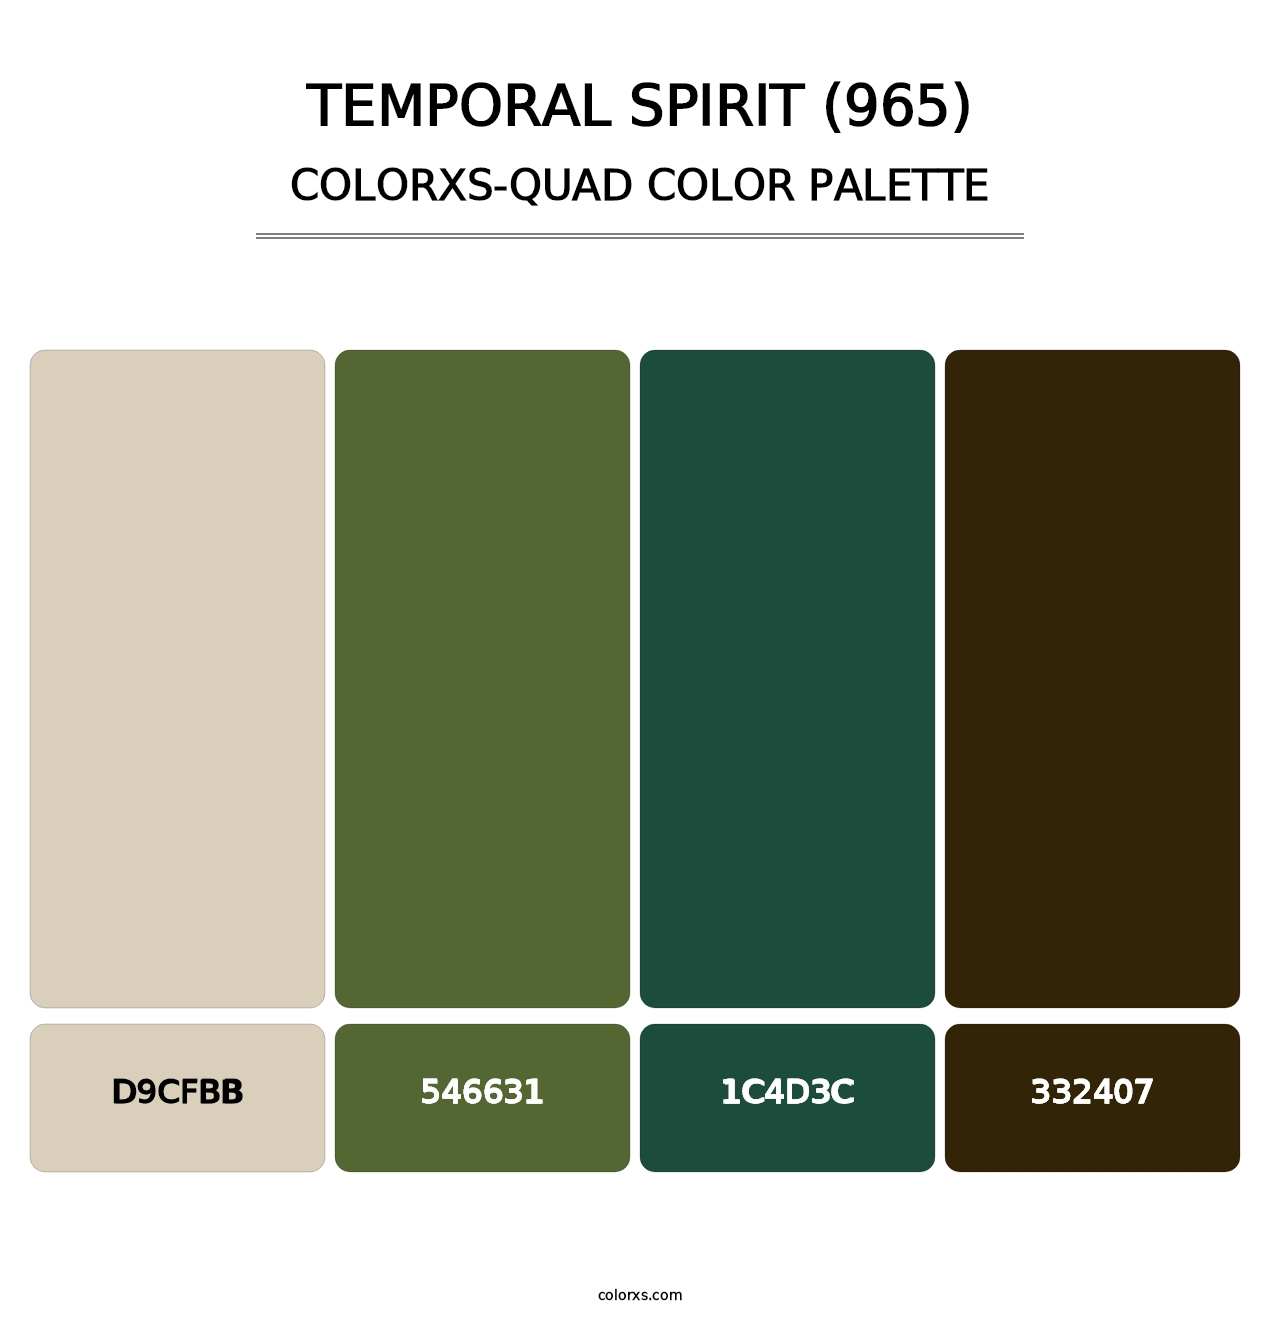 Temporal Spirit (965) - Colorxs Quad Palette